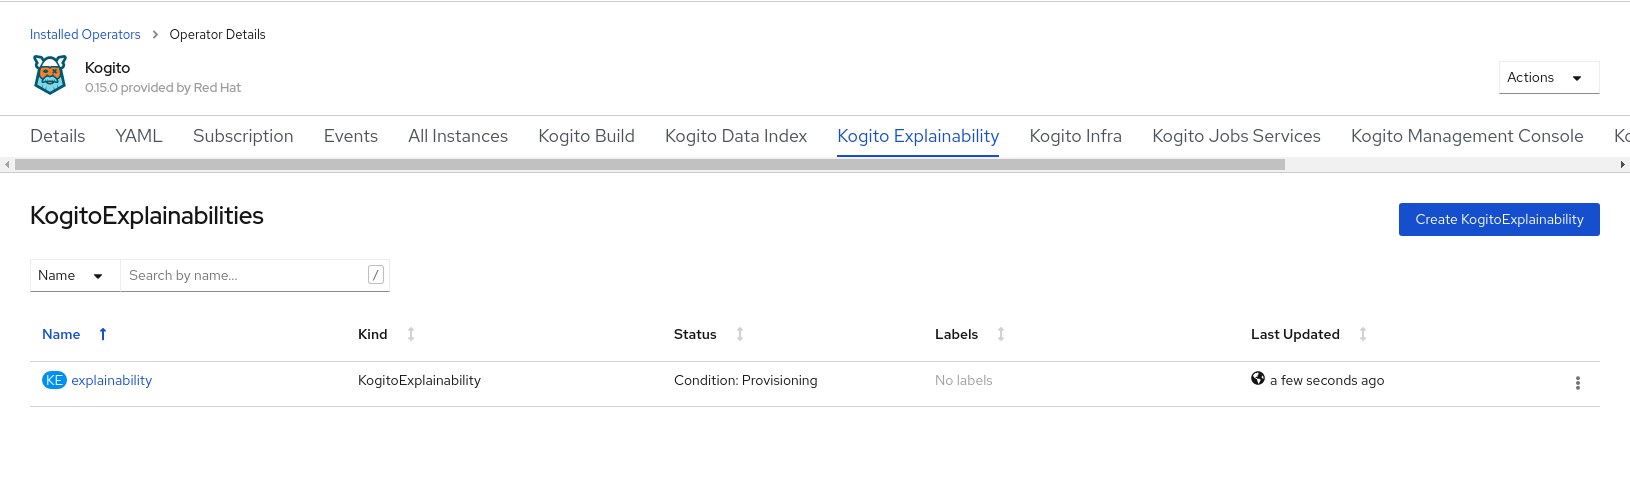 Image of Kogito Explainability Service instance on OpenShift